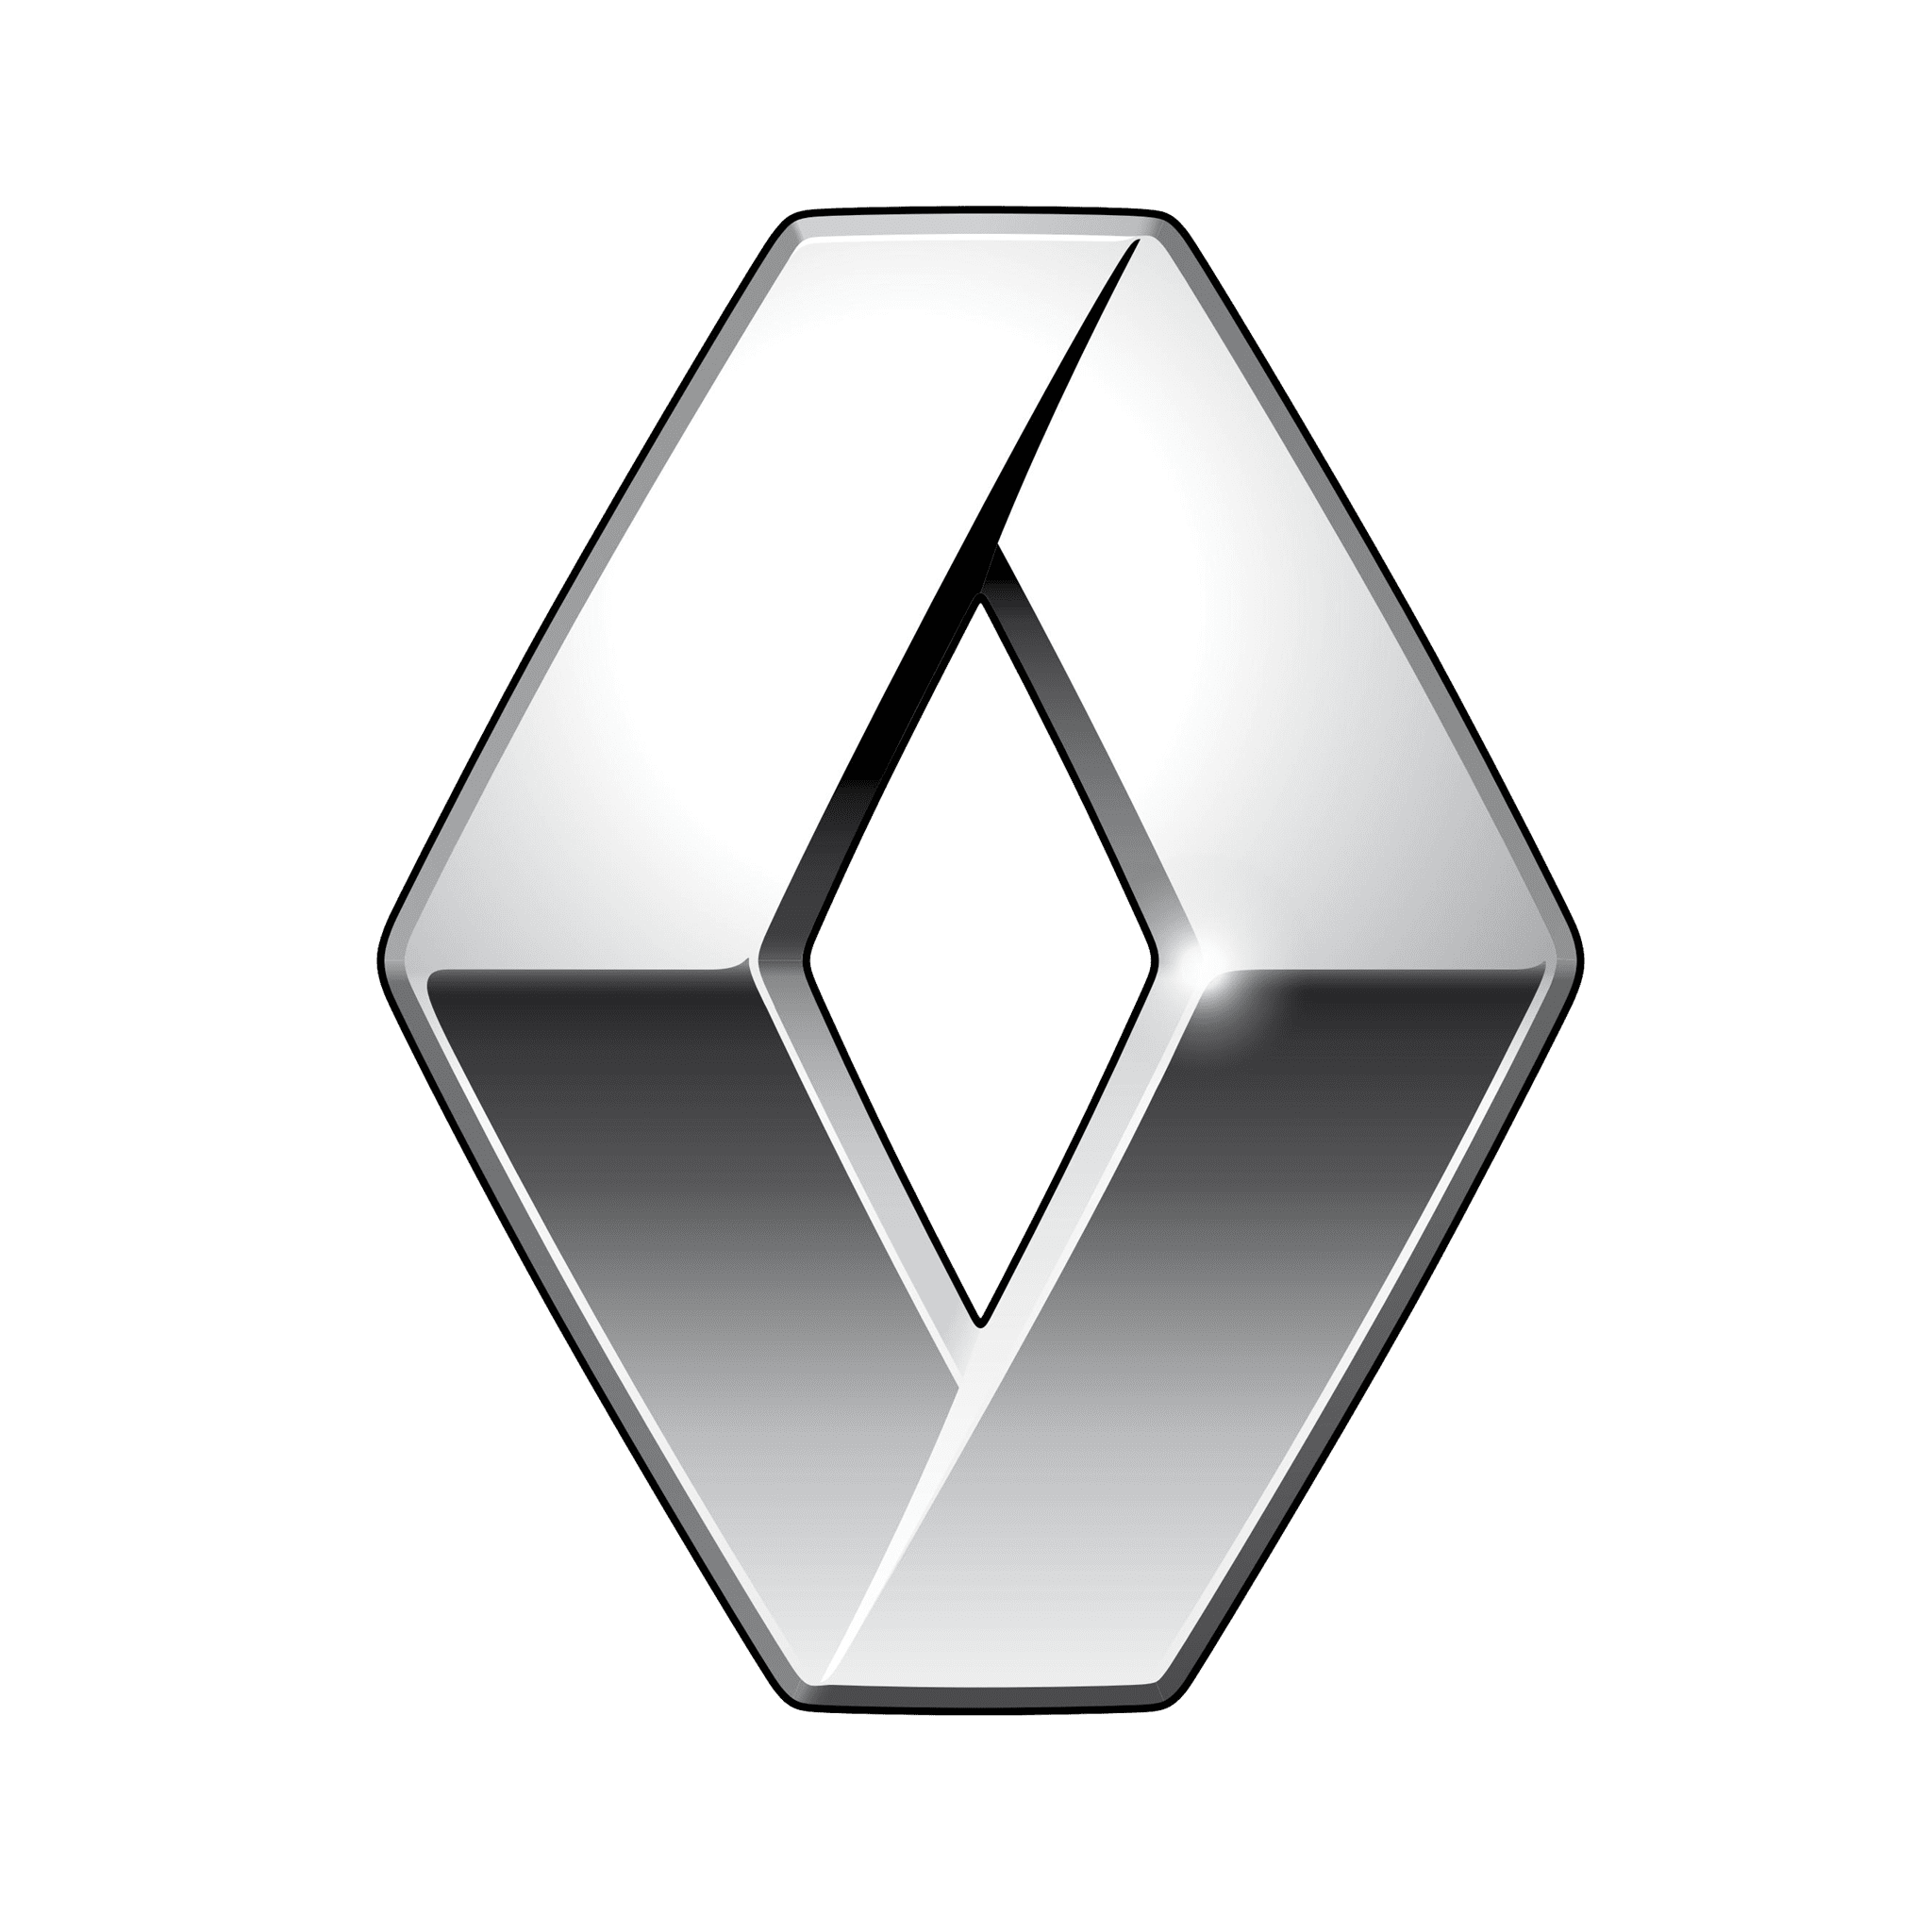 Renault Rentals